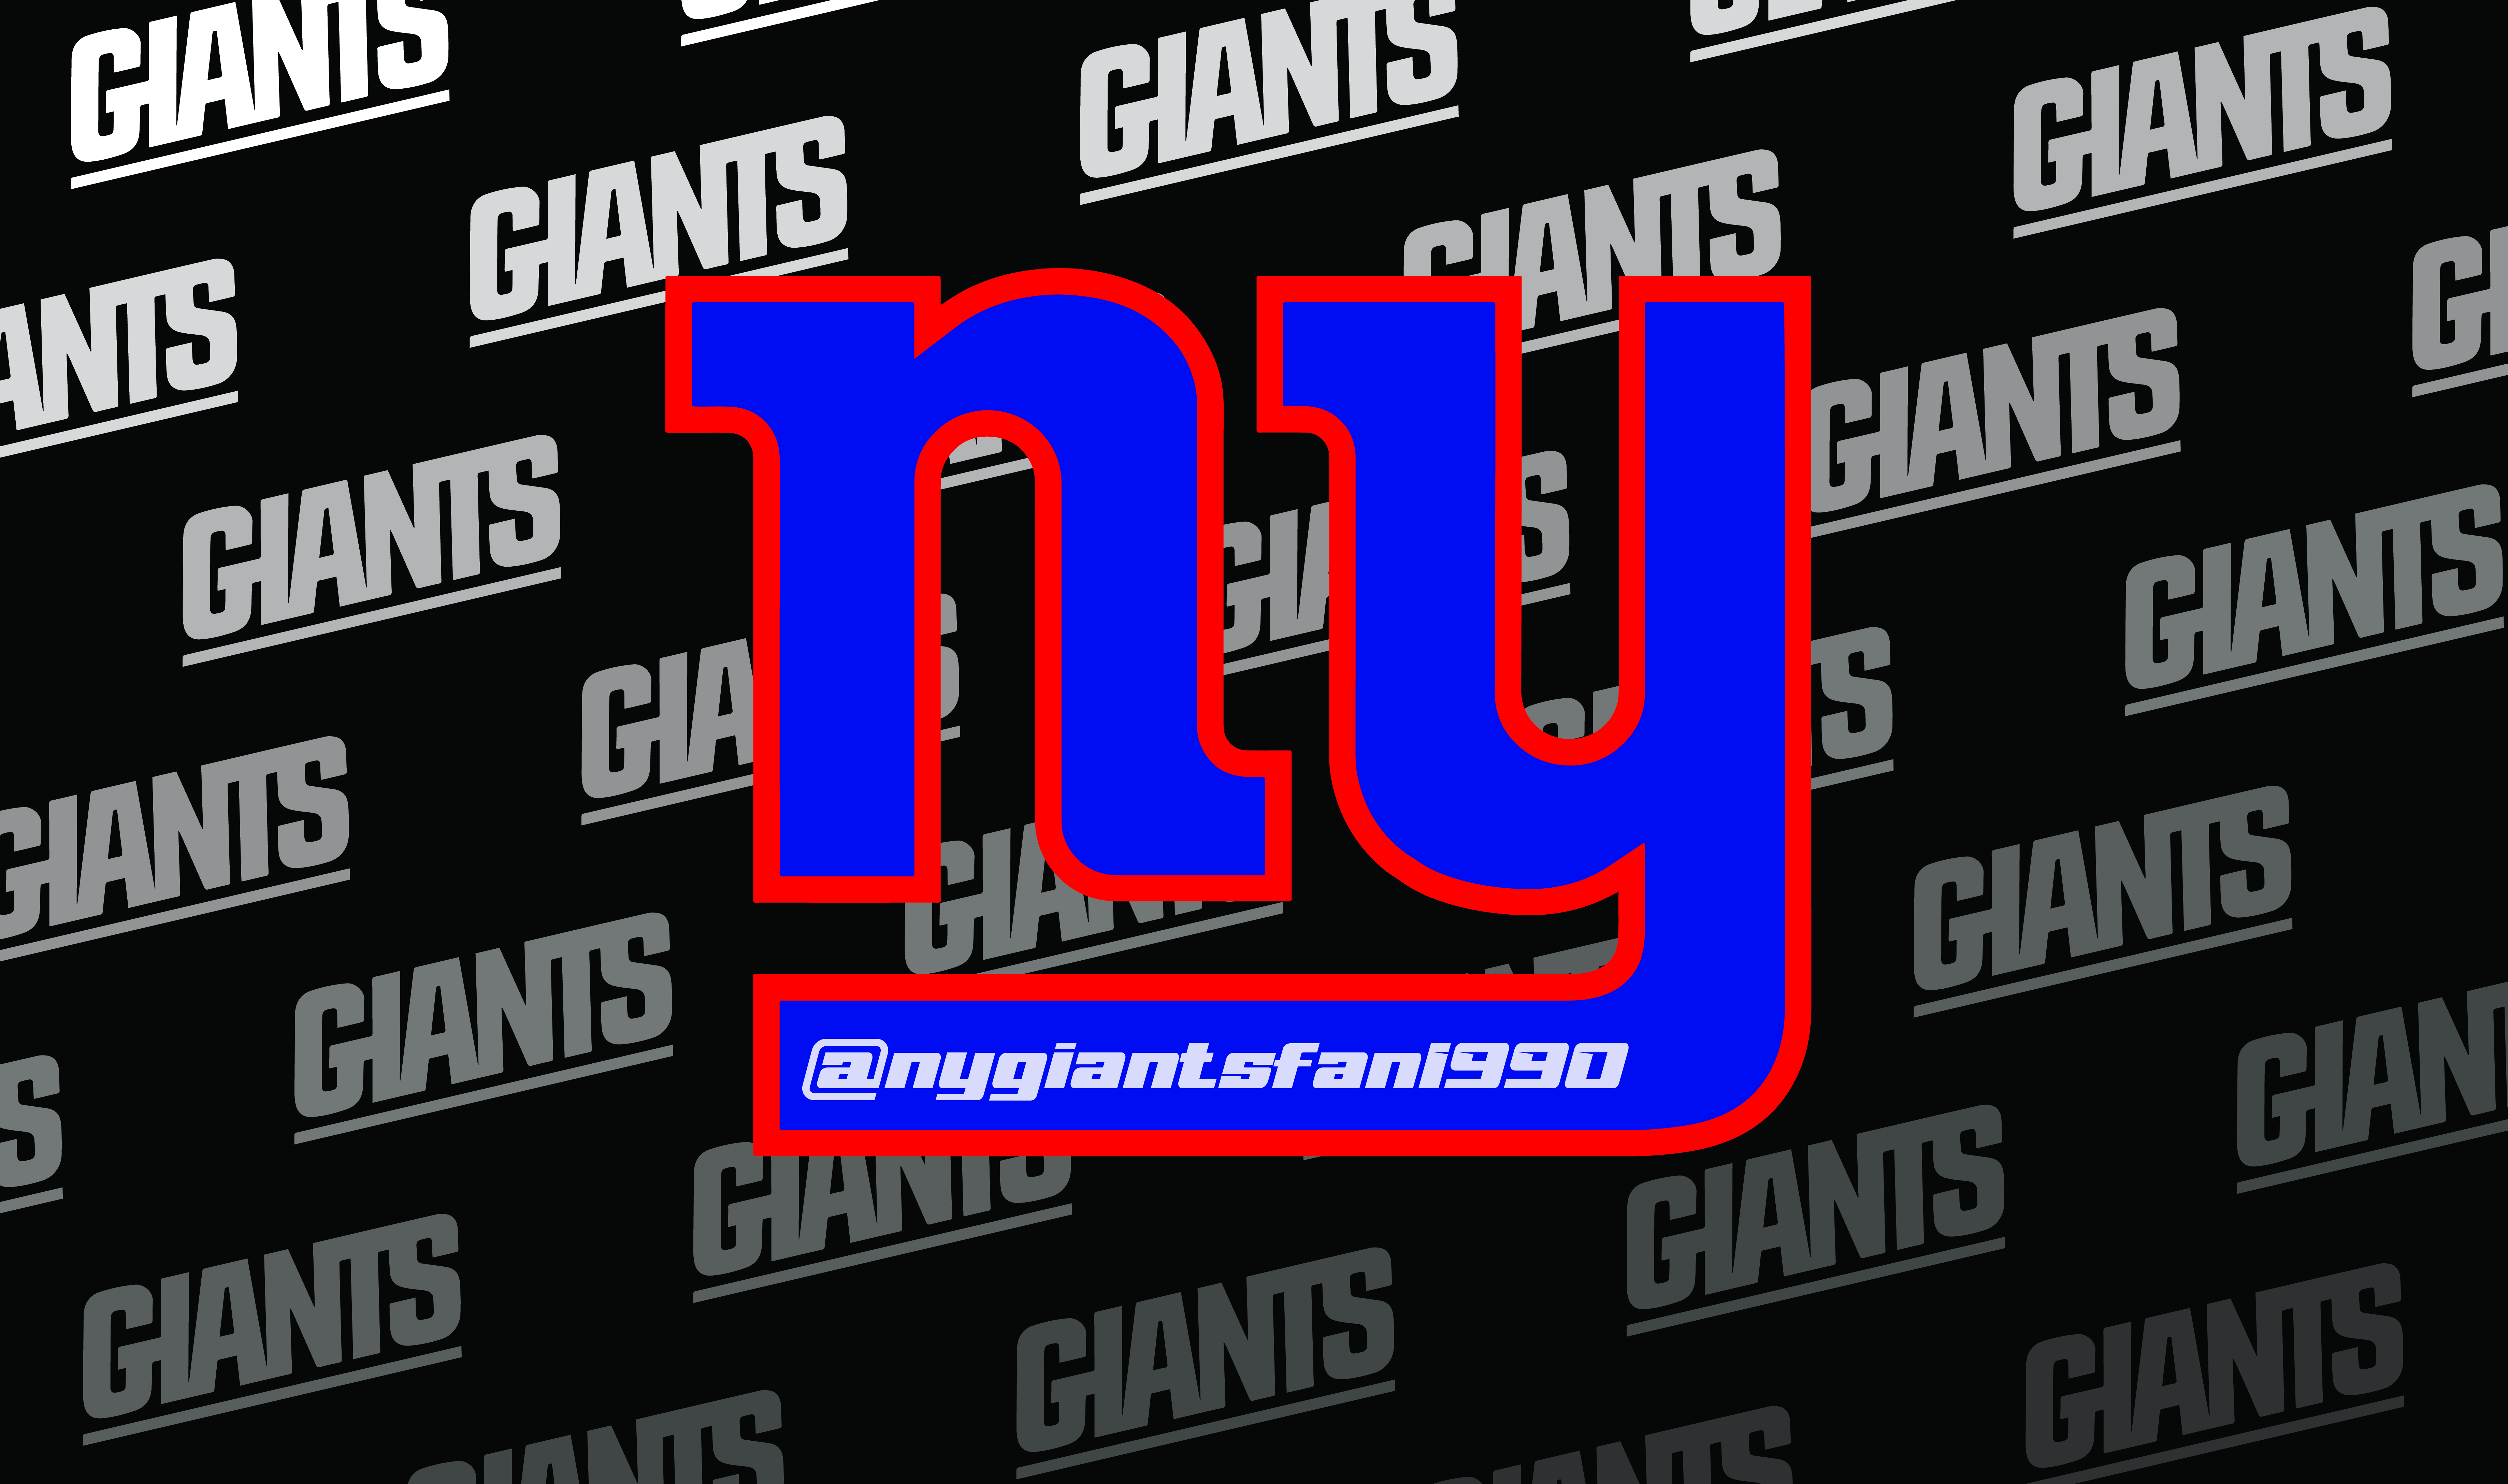 NY Giants + IG Name